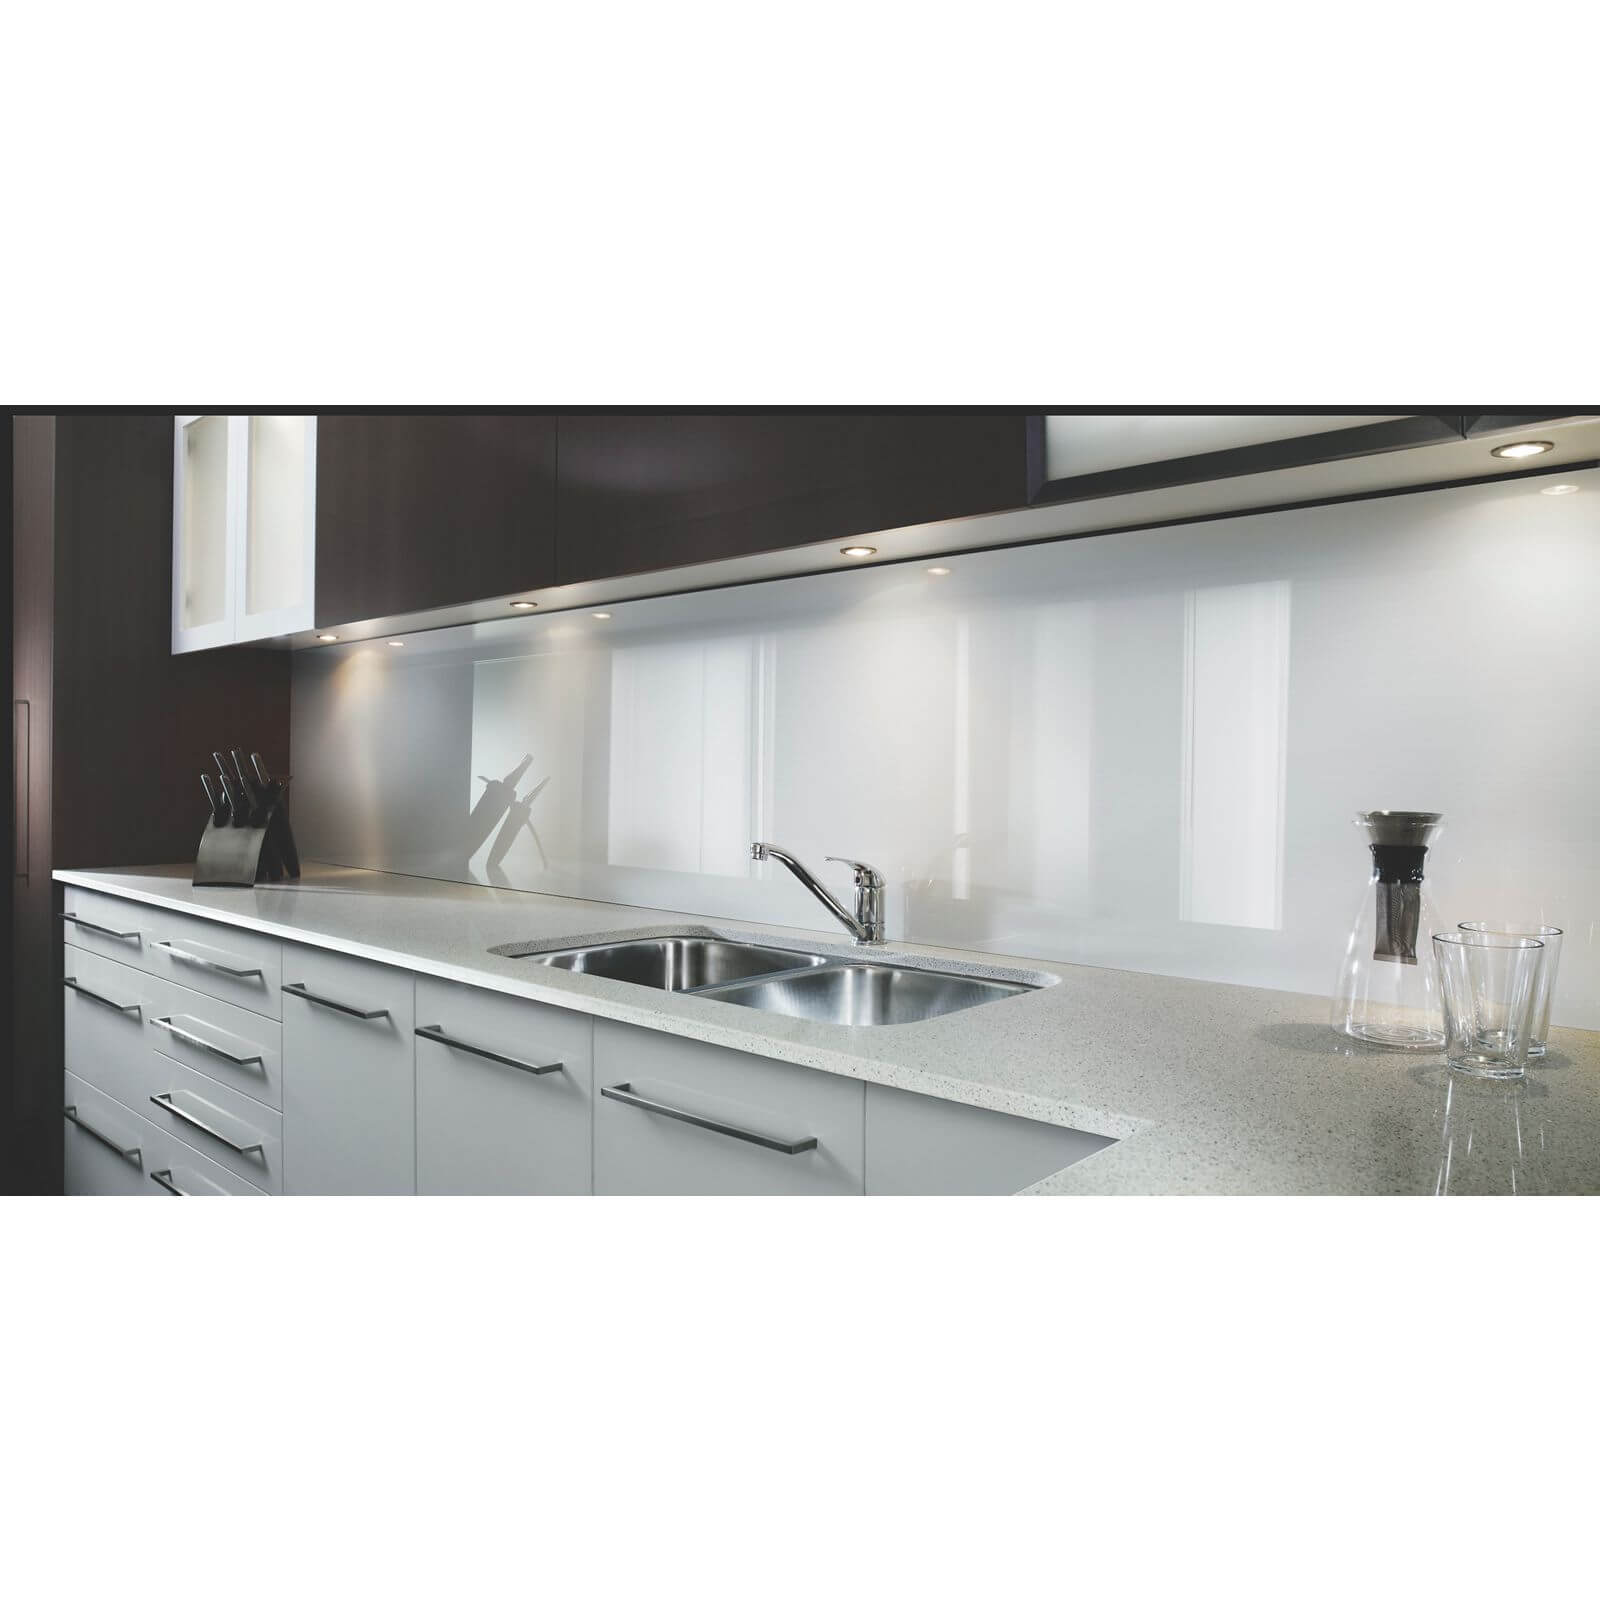 Zenolite Acrylic Kitchen Splashback Panel - 2070 x 500mm - White